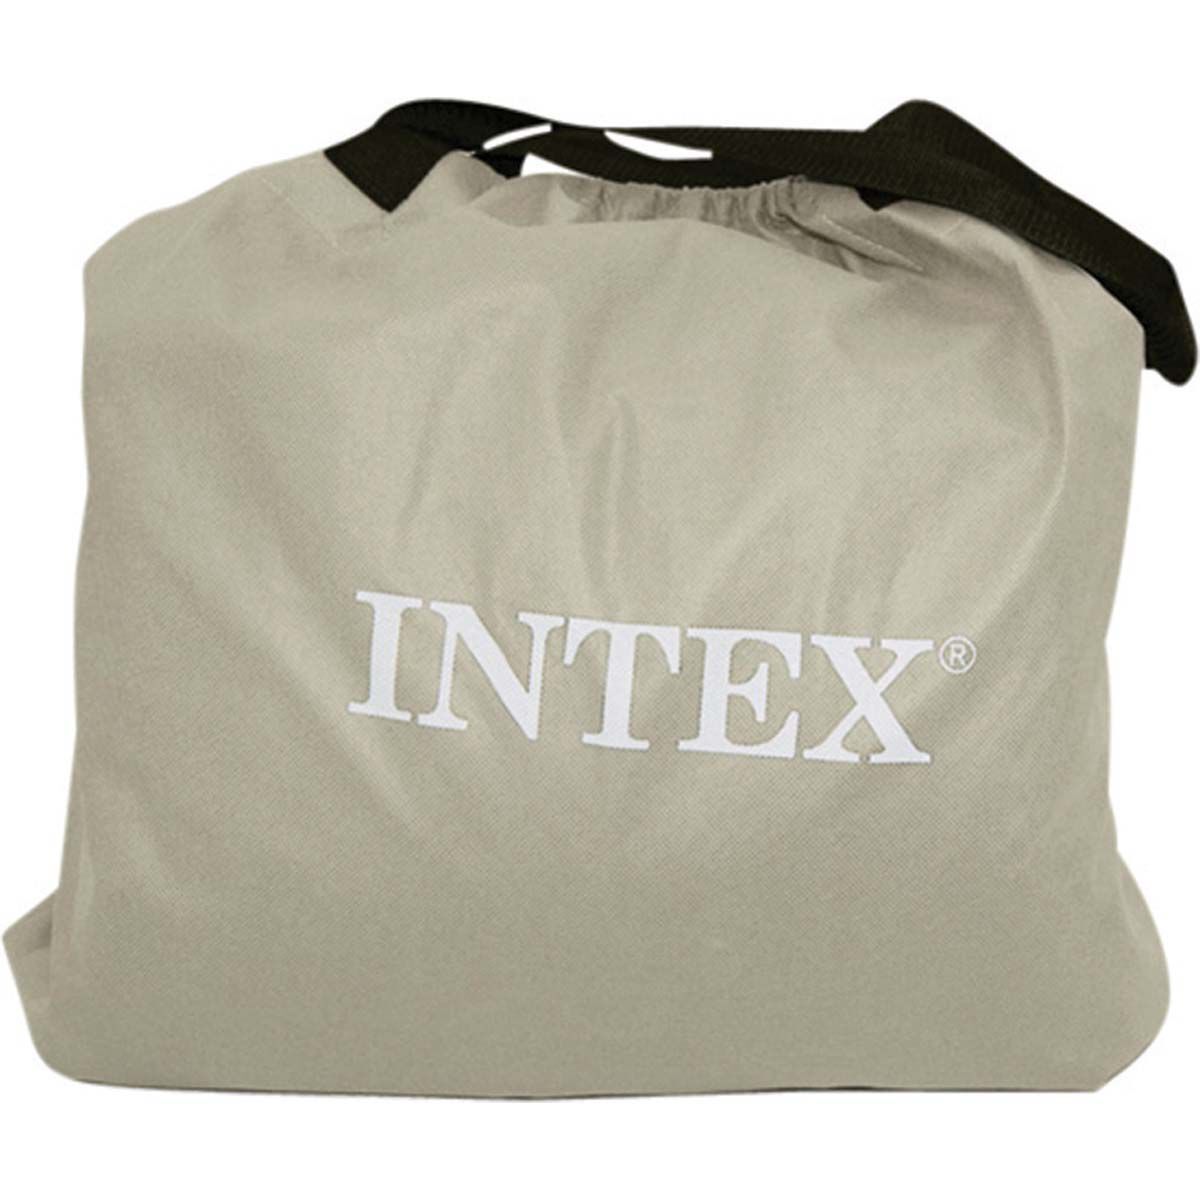 intex travel cot bed